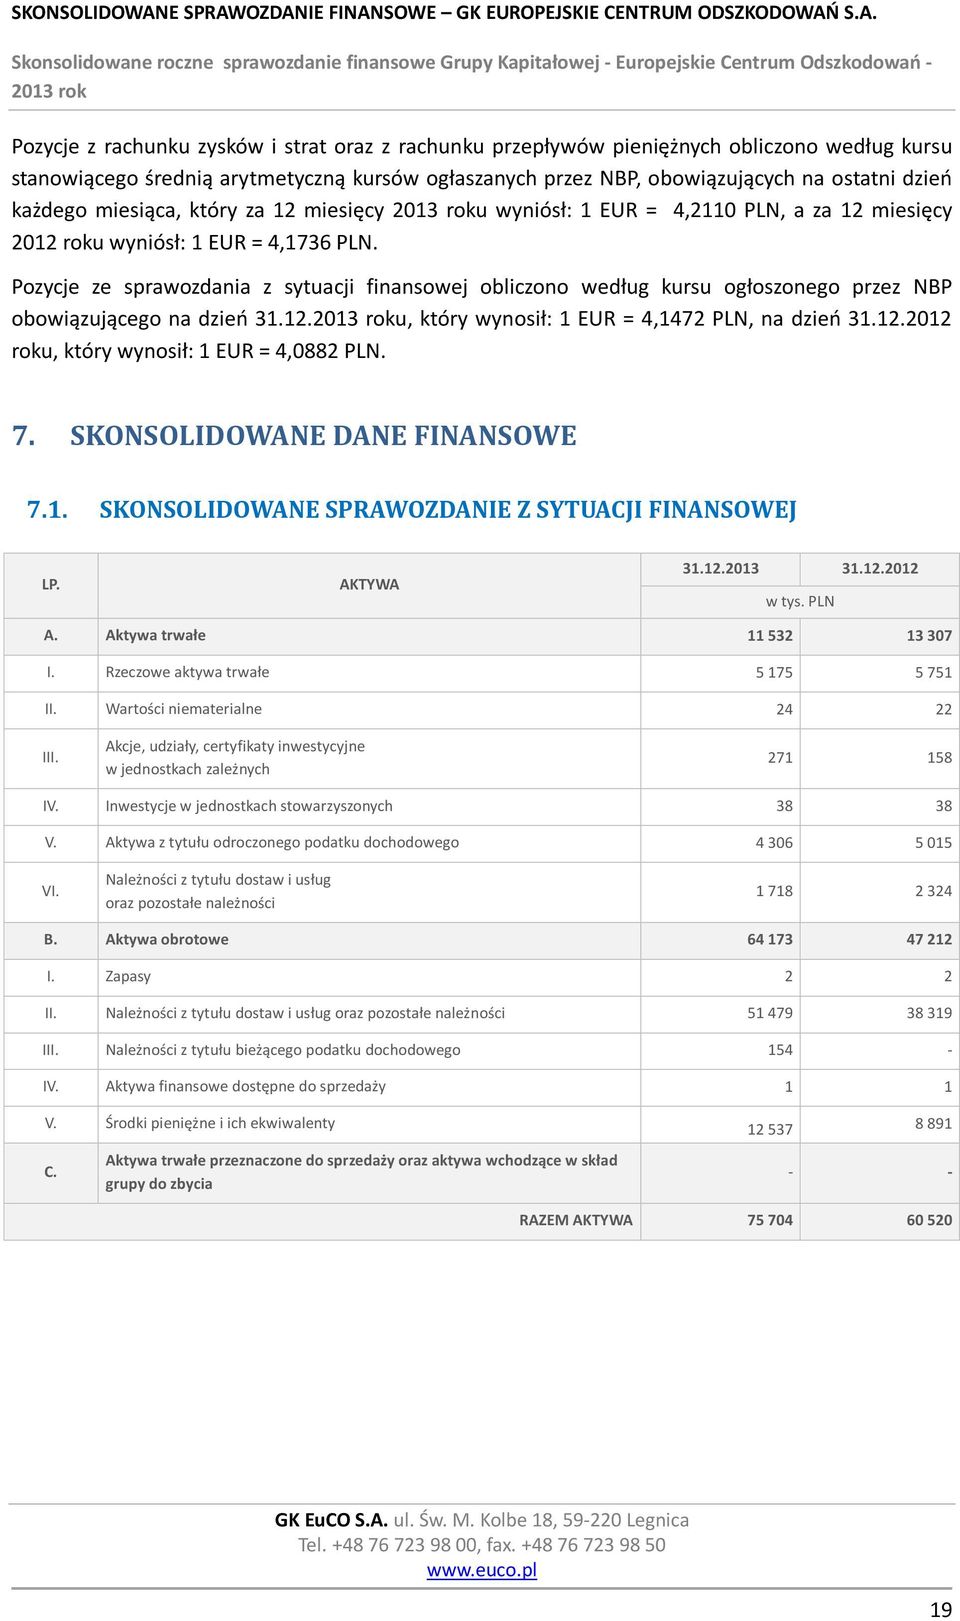 Pozycje ze sprawozdania z sytuacji finansowej obliczono według kursu ogłoszonego przez NBP obowiązującego na dzień 31.12.u, który wynosił: 1 EUR = 4,1472 PLN, na dzień 31.12.2012 roku, który wynosił: 1 EUR = 4,0882 PLN.